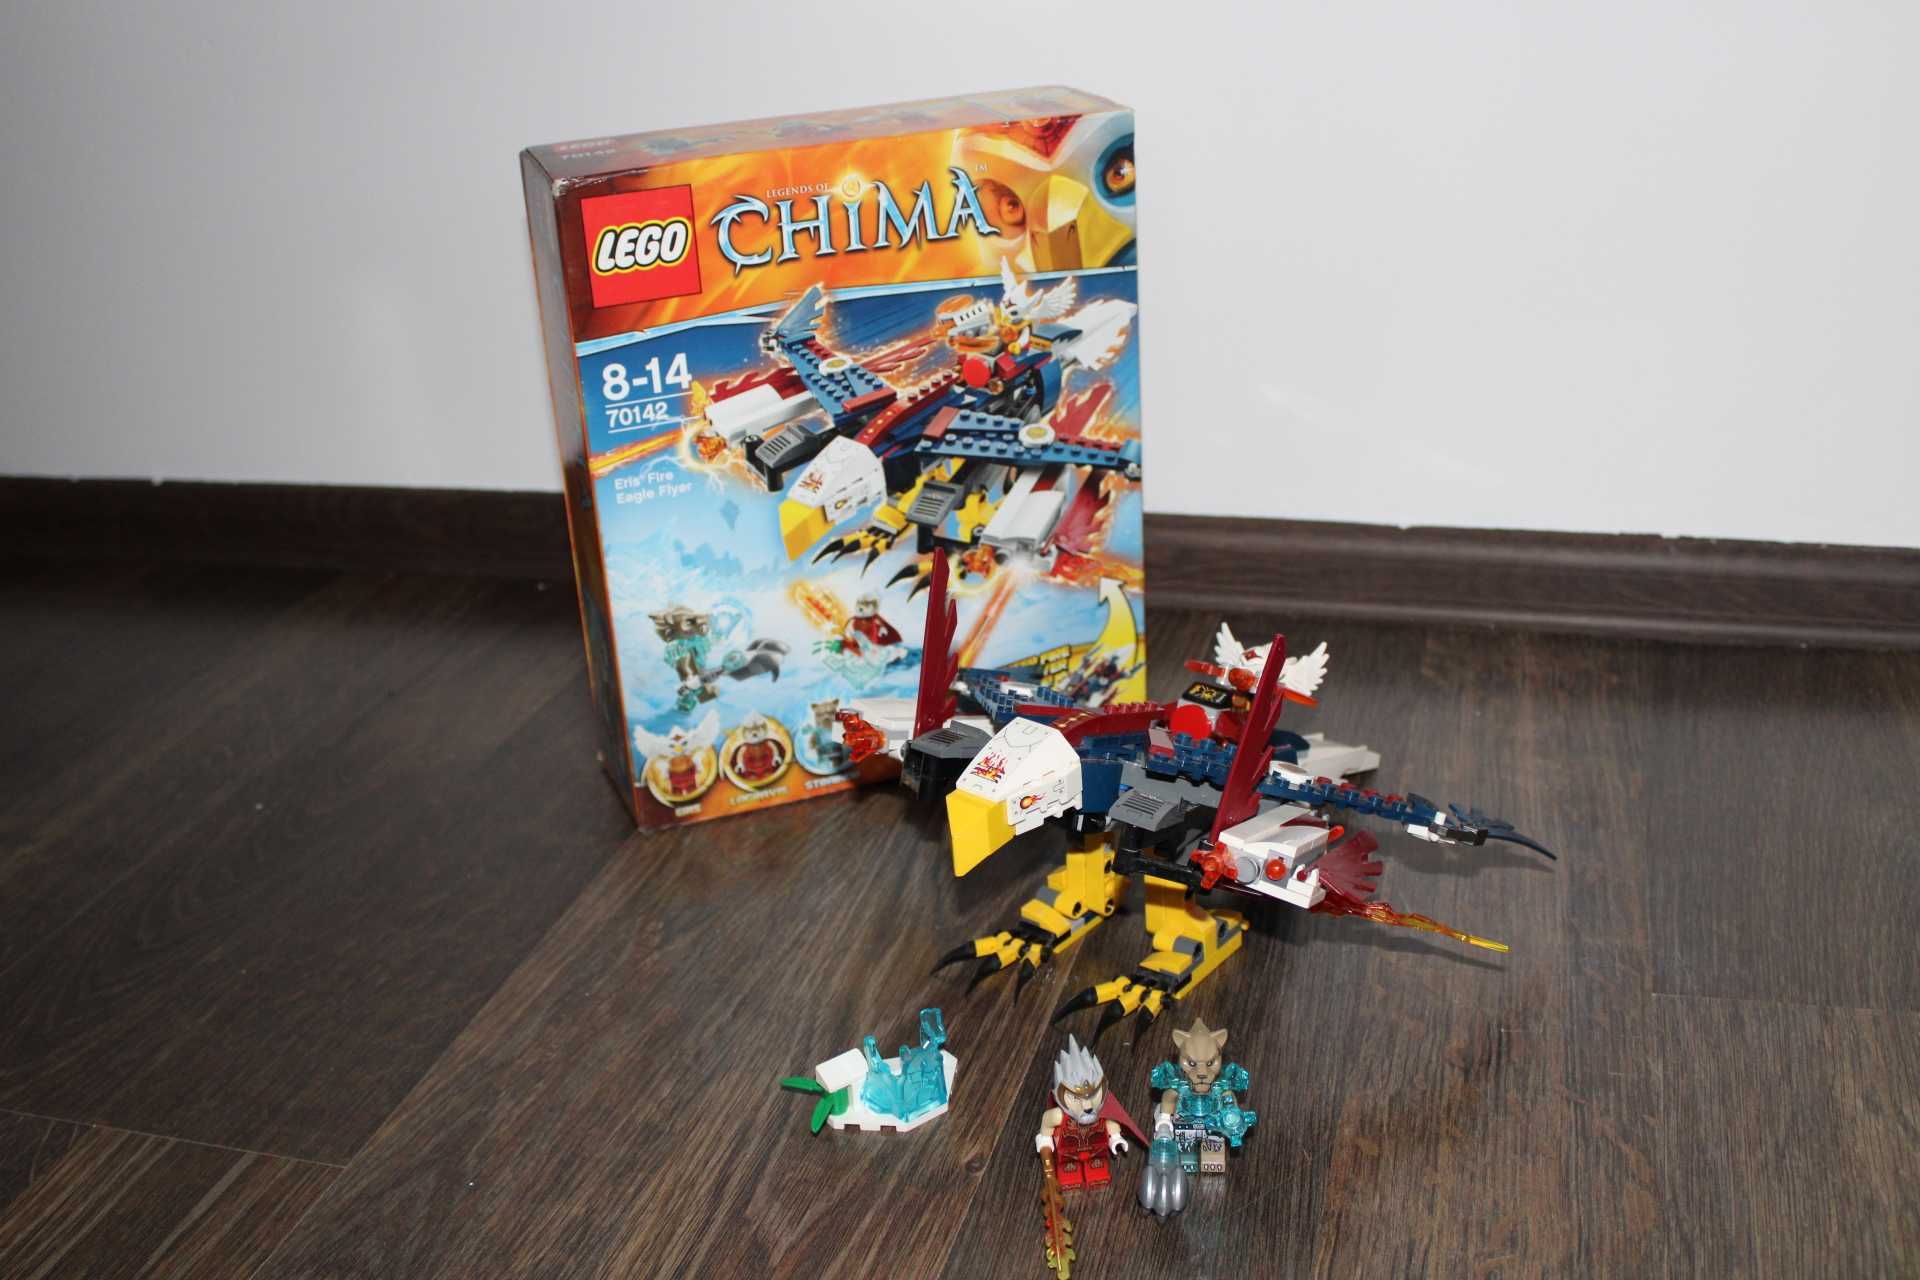 Lego Chima 70142 Ognisty pojazd Eris